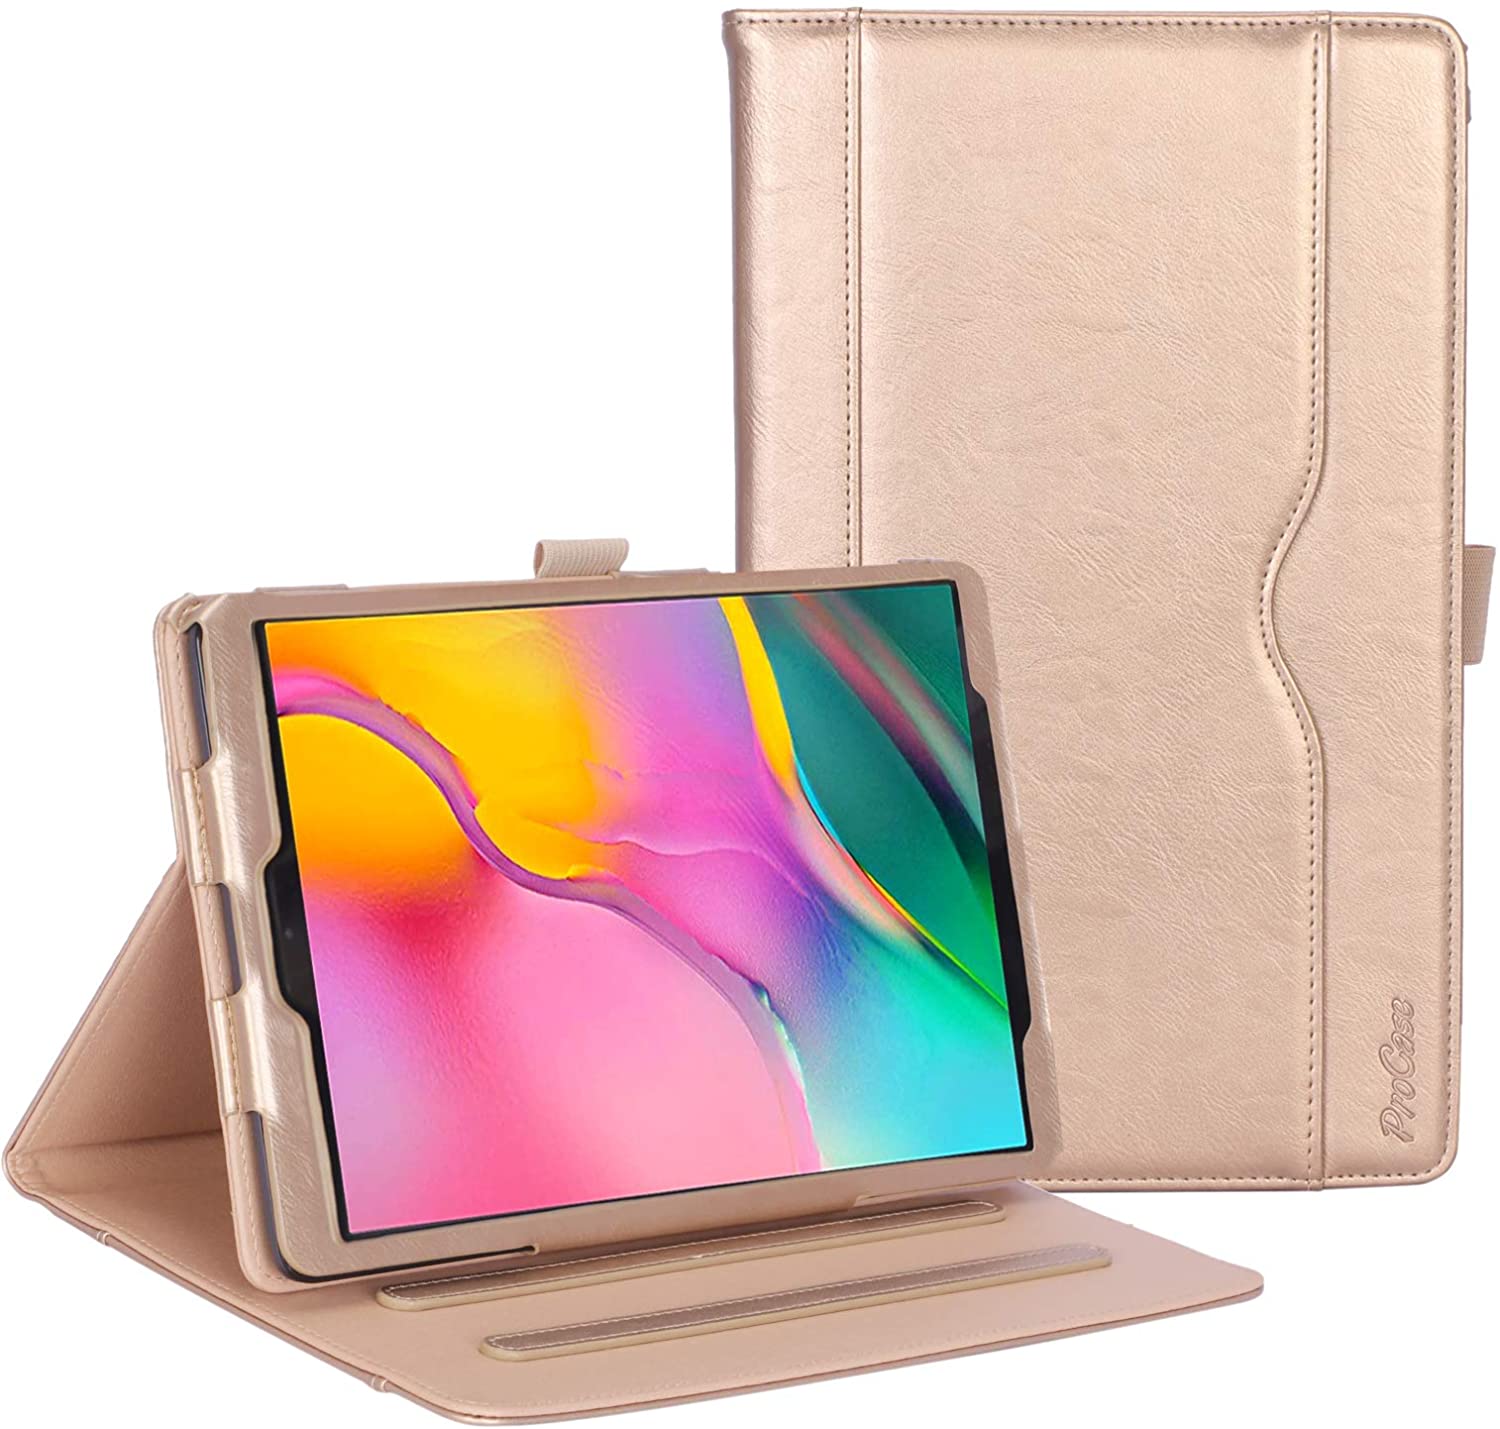 Galaxy Tab A 10.1 2019 T510 Leather Folio Case | ProCase gold